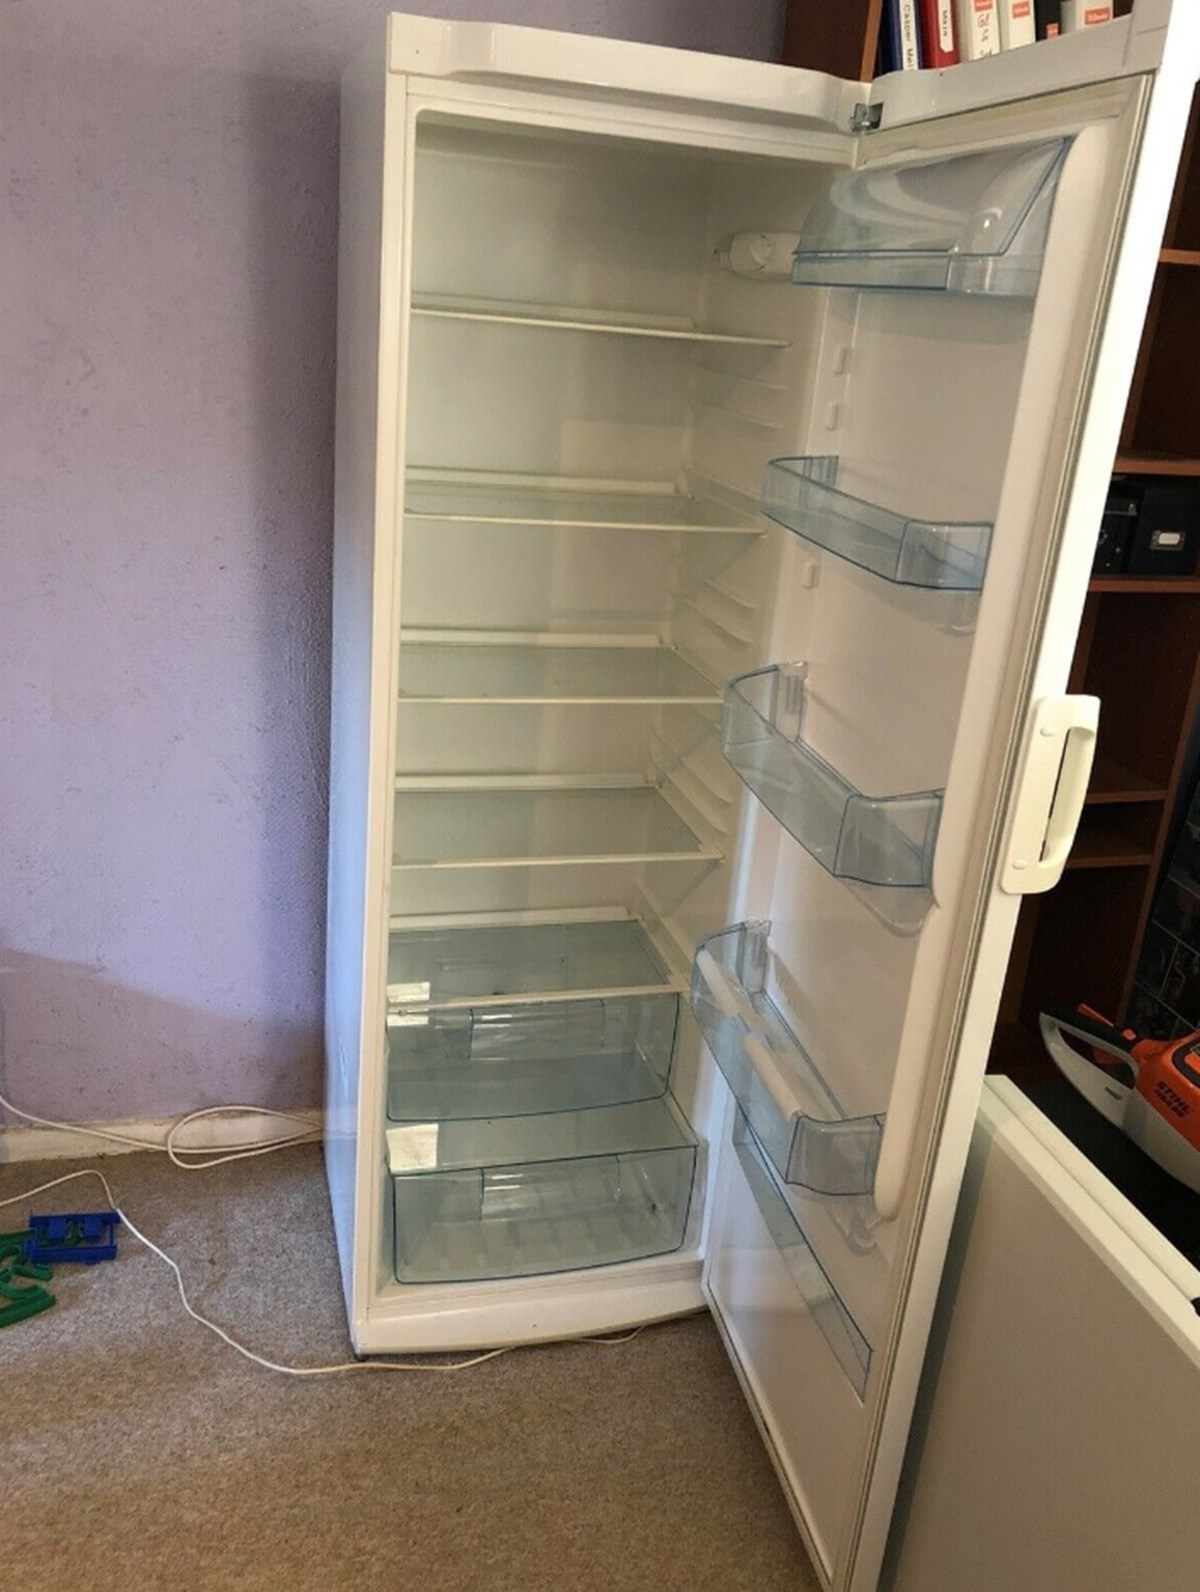 Jacob fra Skive har sat dette køleskab til salg på DBA. Han håber at få 1.000 kroner for det, og skriver i sin DBA-annonce, at køleskabet har en lille bule/et lille hak i fronten. Køleskabet er af mærket Electrolux modelRF3855